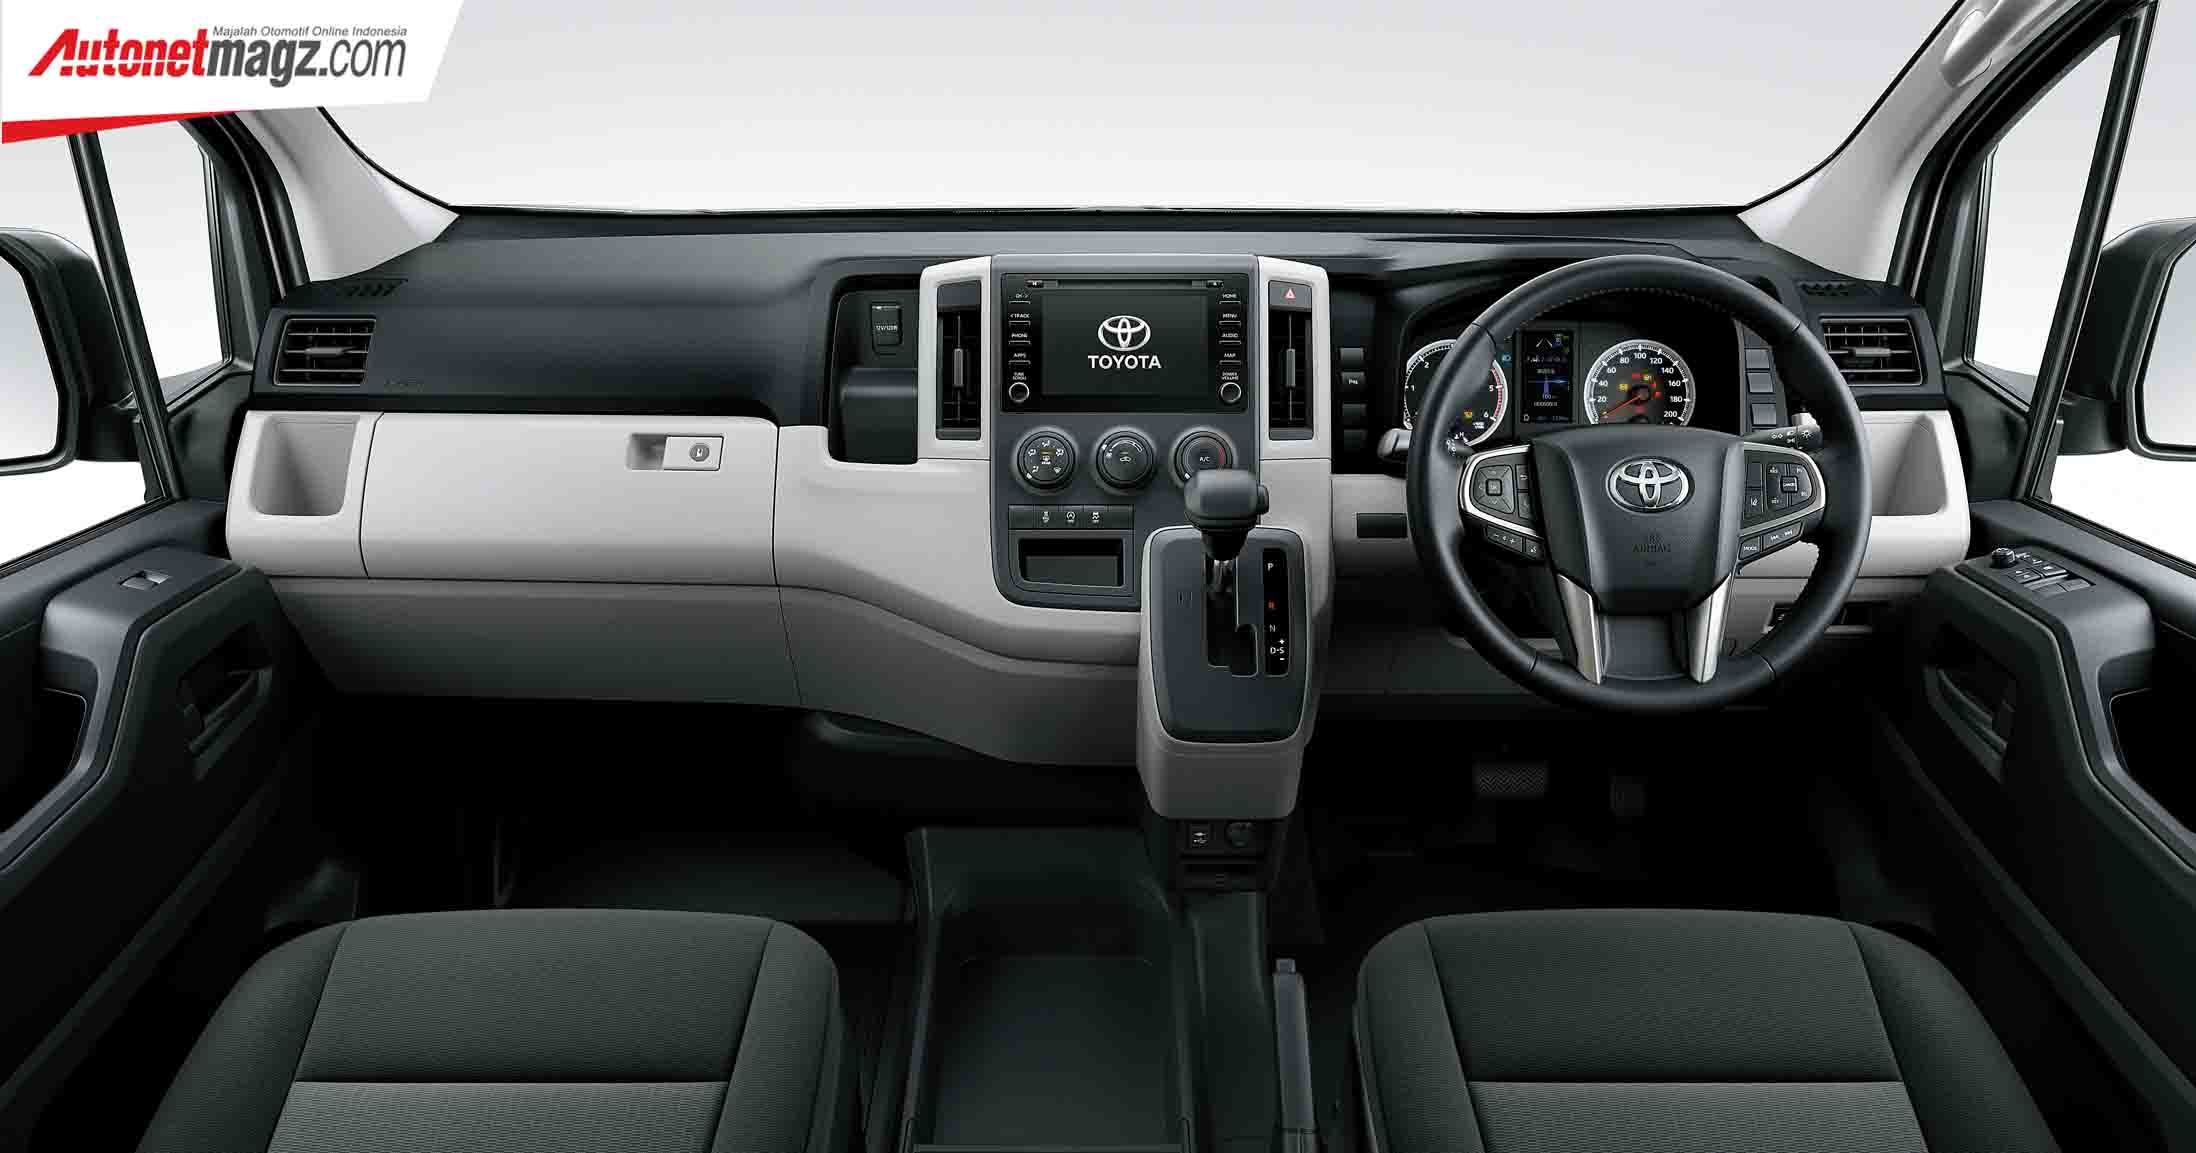 Berita, All New Toyota HiAce Interior: All New Toyota HiAce Debut Perdana di Filipina, Pakai Mesin Baru